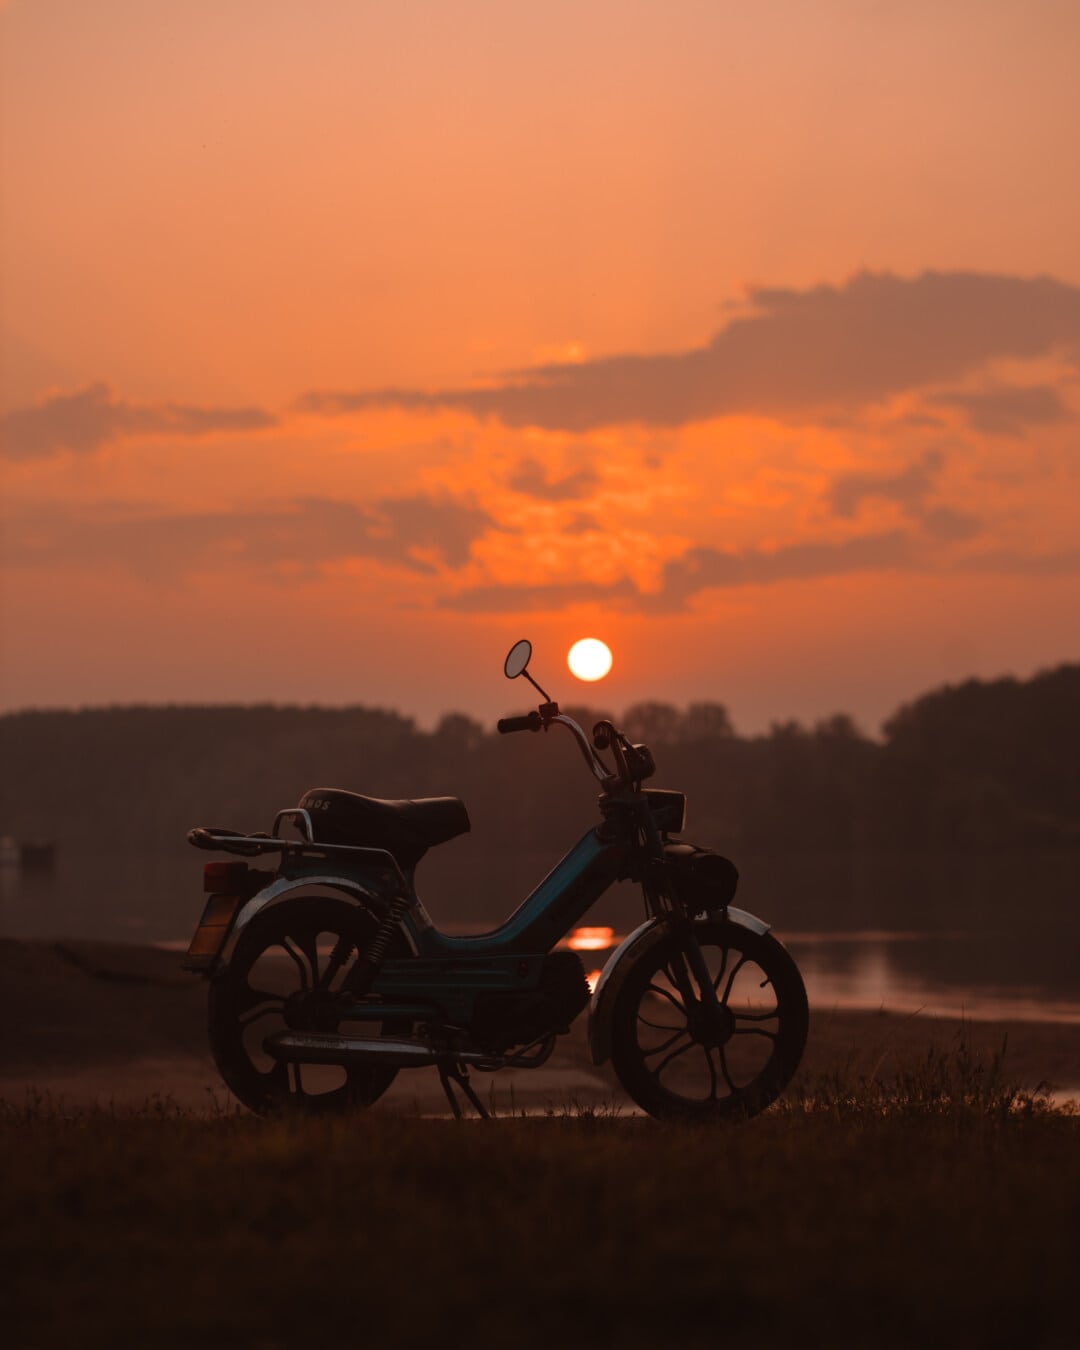 мопед, мотоцикл, с подсветкой, силуэт, закат, вечер, пейзаж, на берегу озера, рассвет, транспортное средство